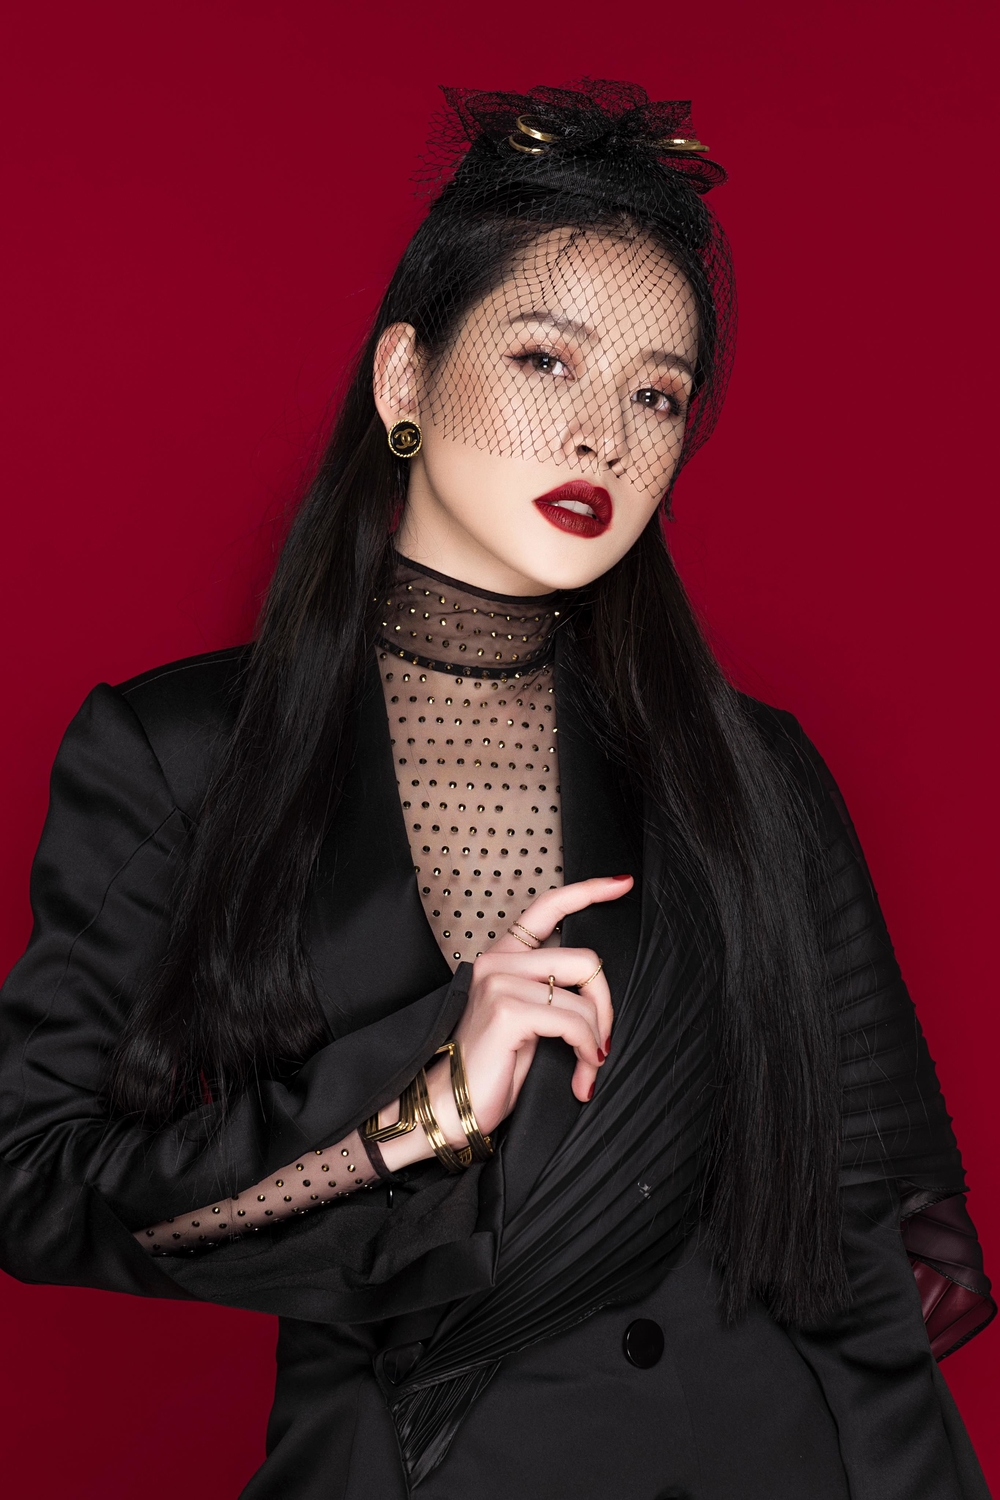 Mặc kệ hát live yếu, Chi Pu vẫn được mời biểu diễn chung khảo phía Nam Hoa hậu Việt Nam 2018 - Tin sao Viet - Tin tuc sao Viet - Scandal sao Viet - Tin tuc cua Sao - Tin cua Sao